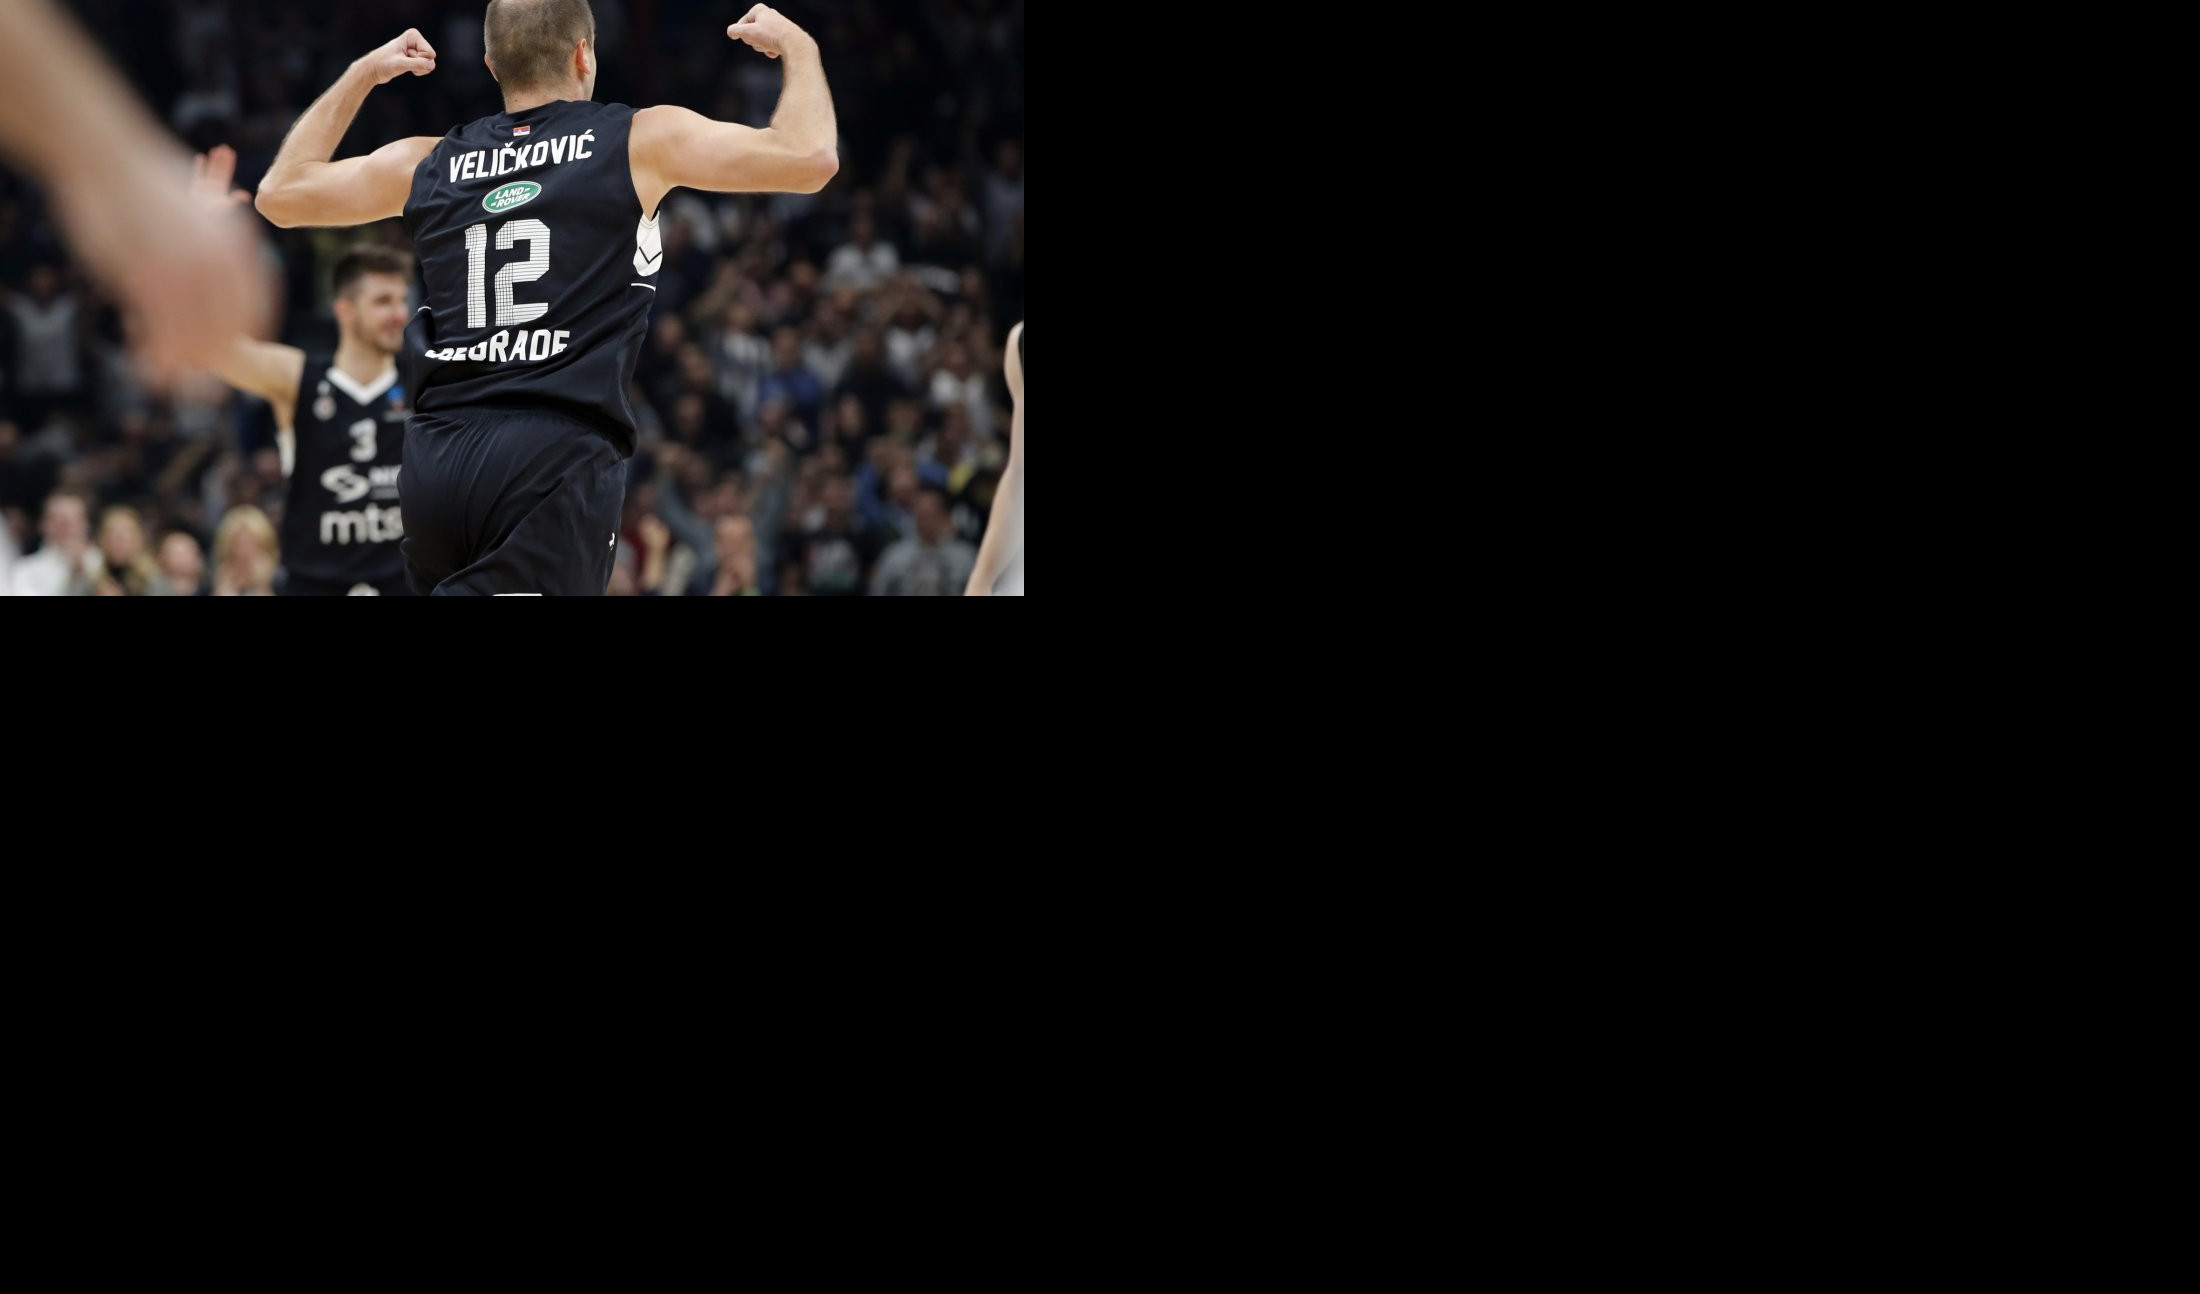 OD SKUPLJAČA LOPTE DO REKORDERA! Veličković emotivno posle izbijanja na vrh liste igrača sa najviše nastupa za Partizan!